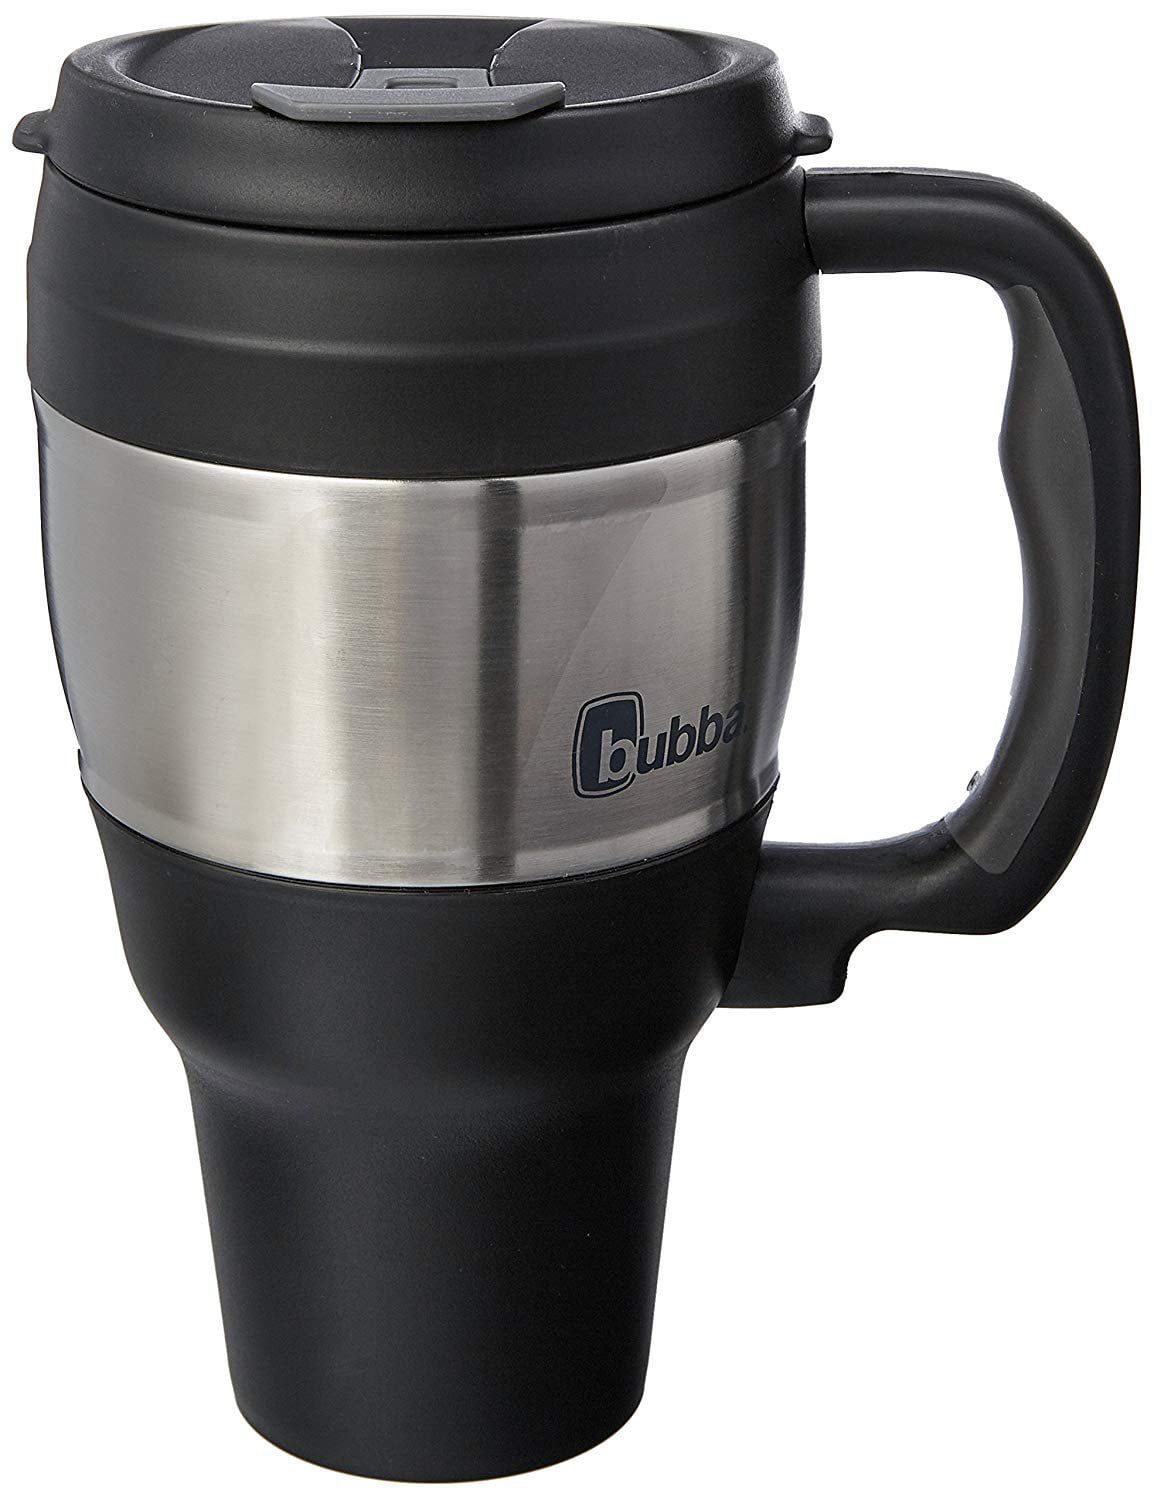 are bubba travel mugs dishwasher safe